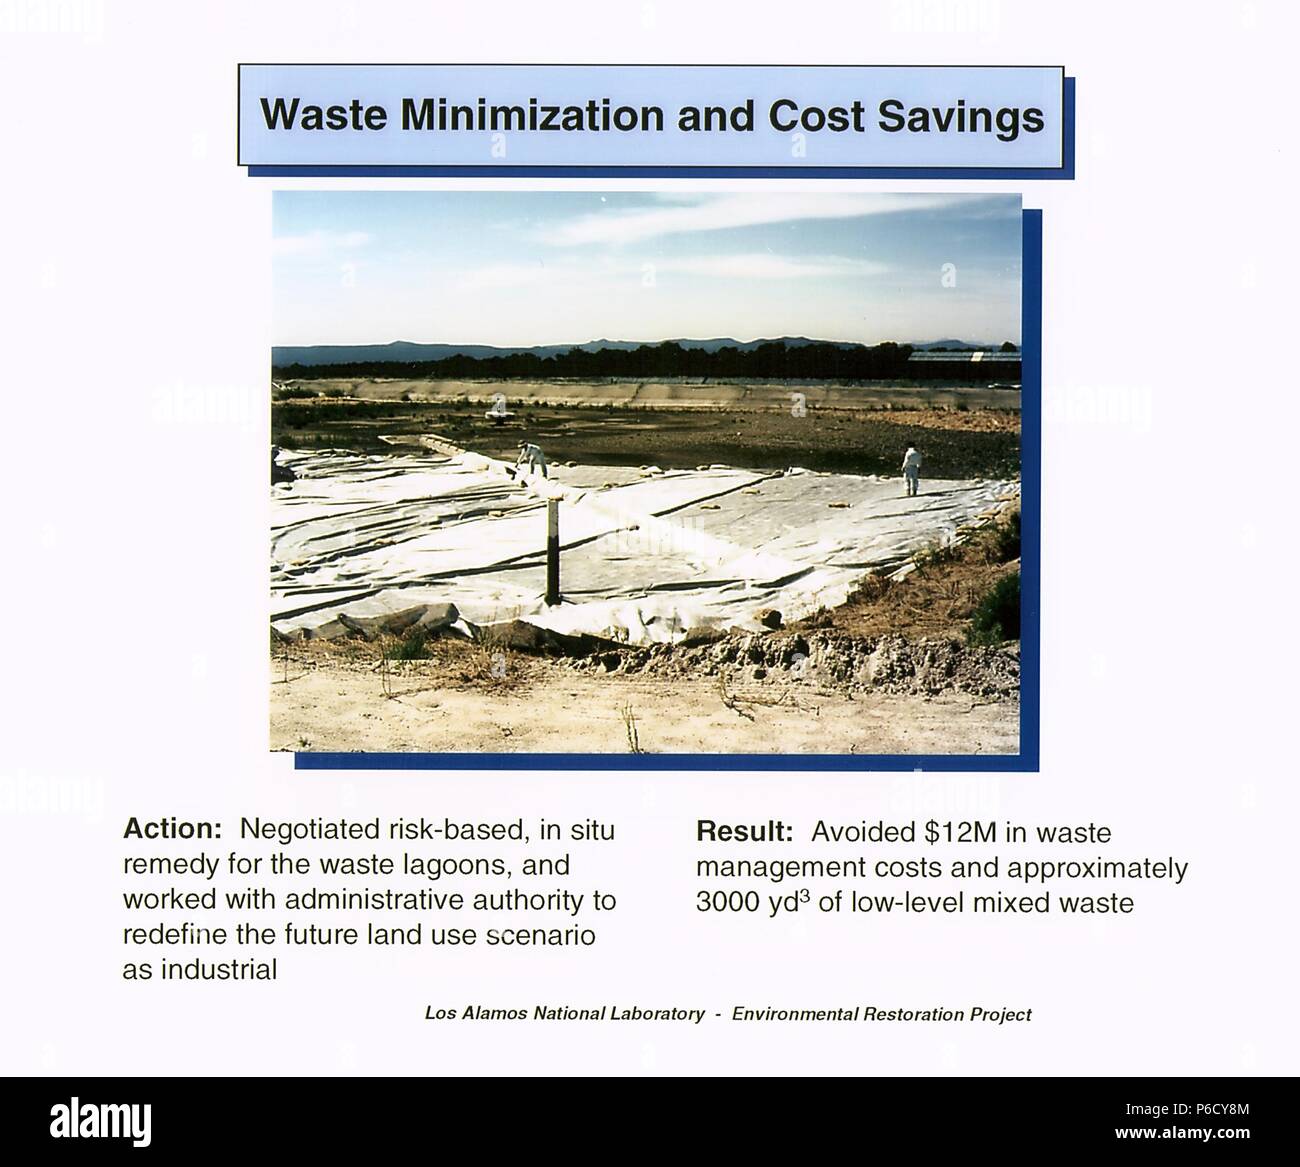 Minimizzazione dei rifiuti e il risparmio sui costi azione proposta del Los Alamos National Laboratory per il restauro ambientale progetto, Los Alamos, Nuovo Messico, 2016. Immagine cortesia del Dipartimento Americano di Energia. () Foto Stock